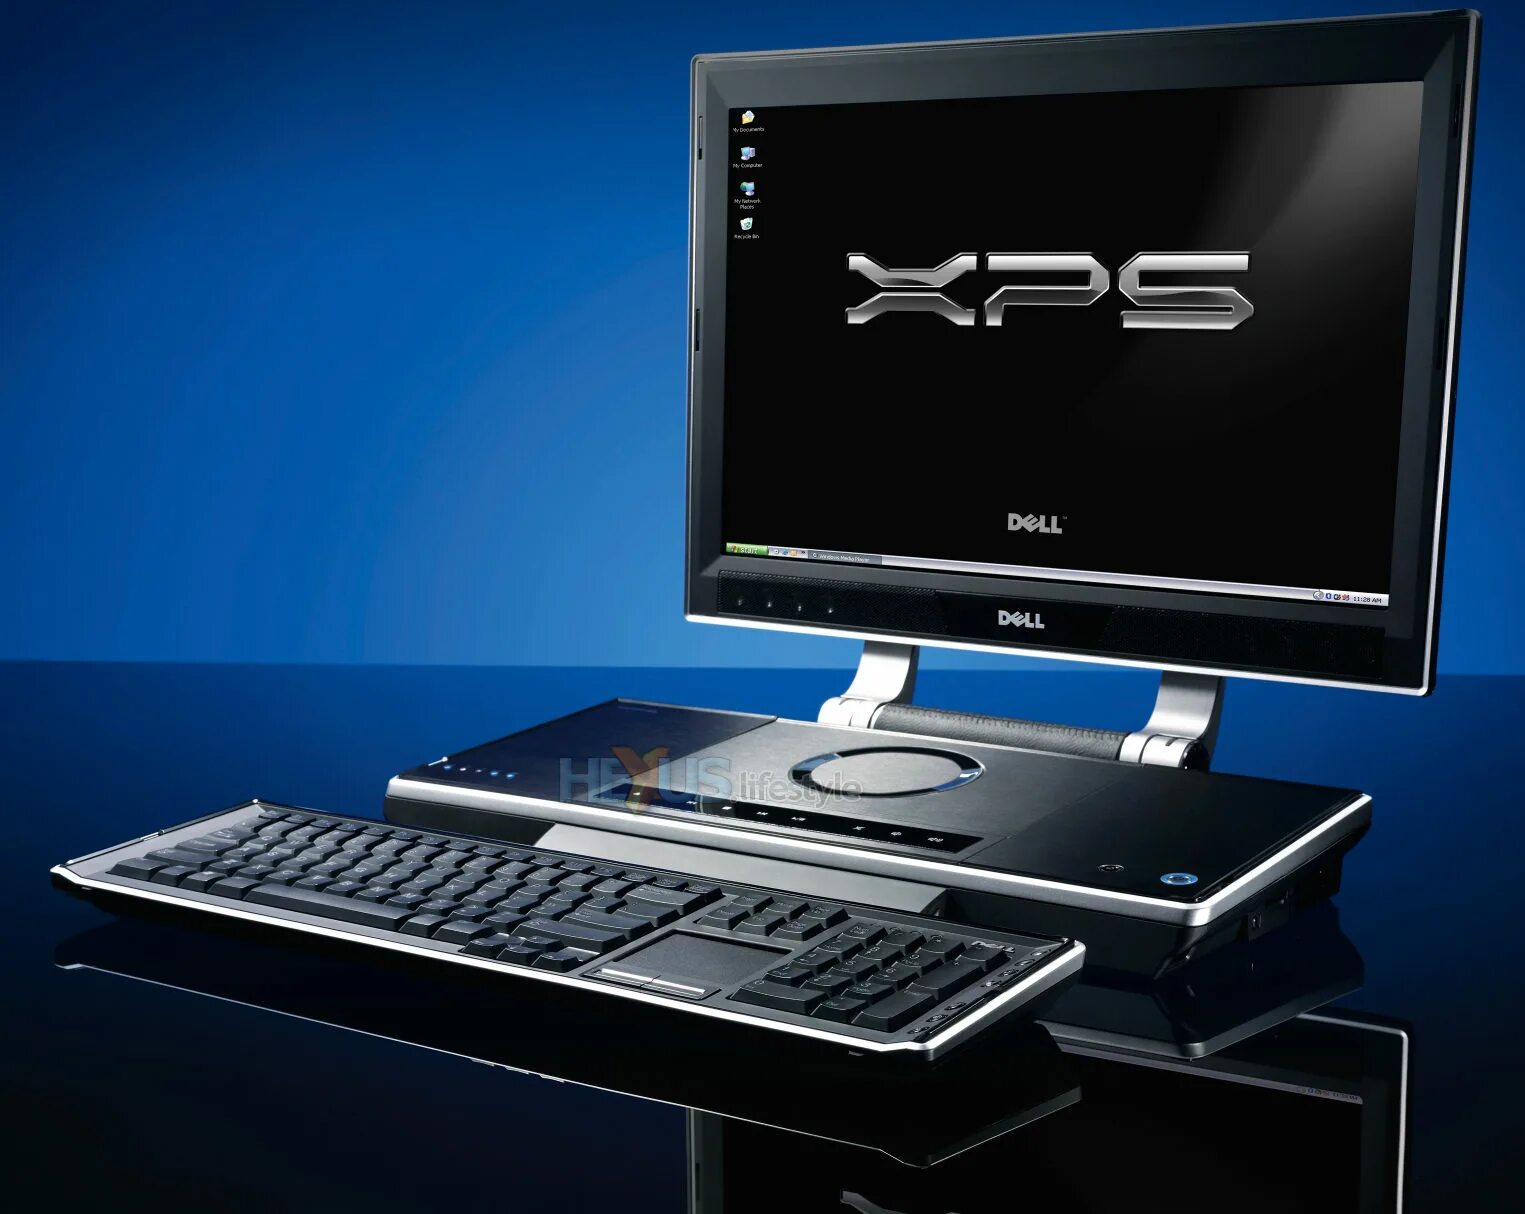 Dell XPS m2010. Dell XPS 2006. Dell Inspiron XPS m2010. Dell XPS 600. Почему современный компьютер